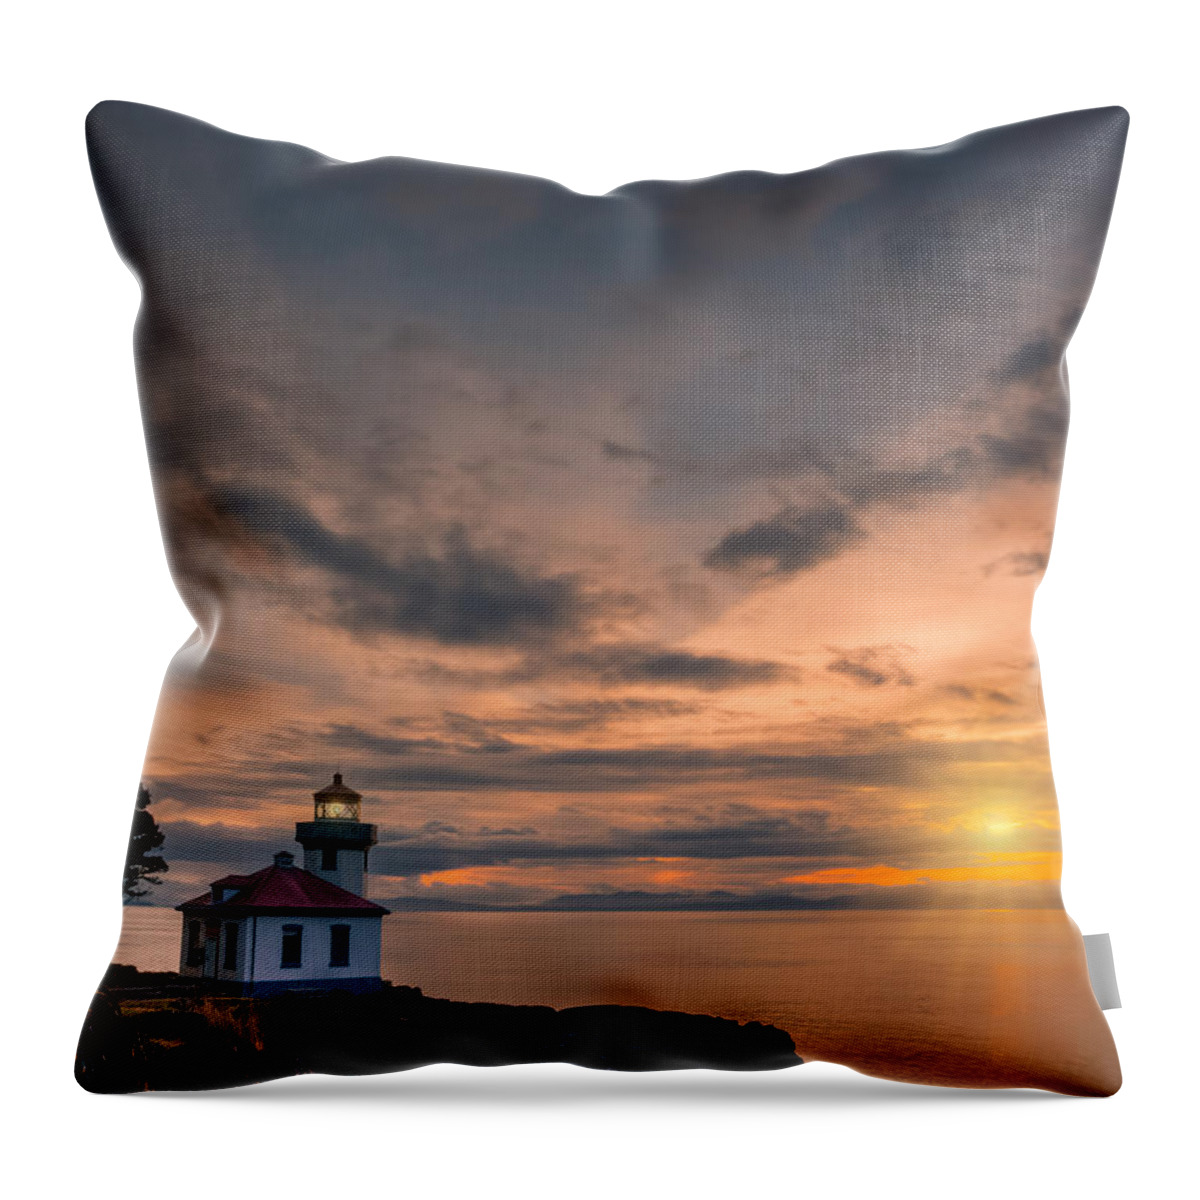 Lime Kiln Lighthouse Throw Pillow featuring the photograph San Juan Sunset by Dan Mihai